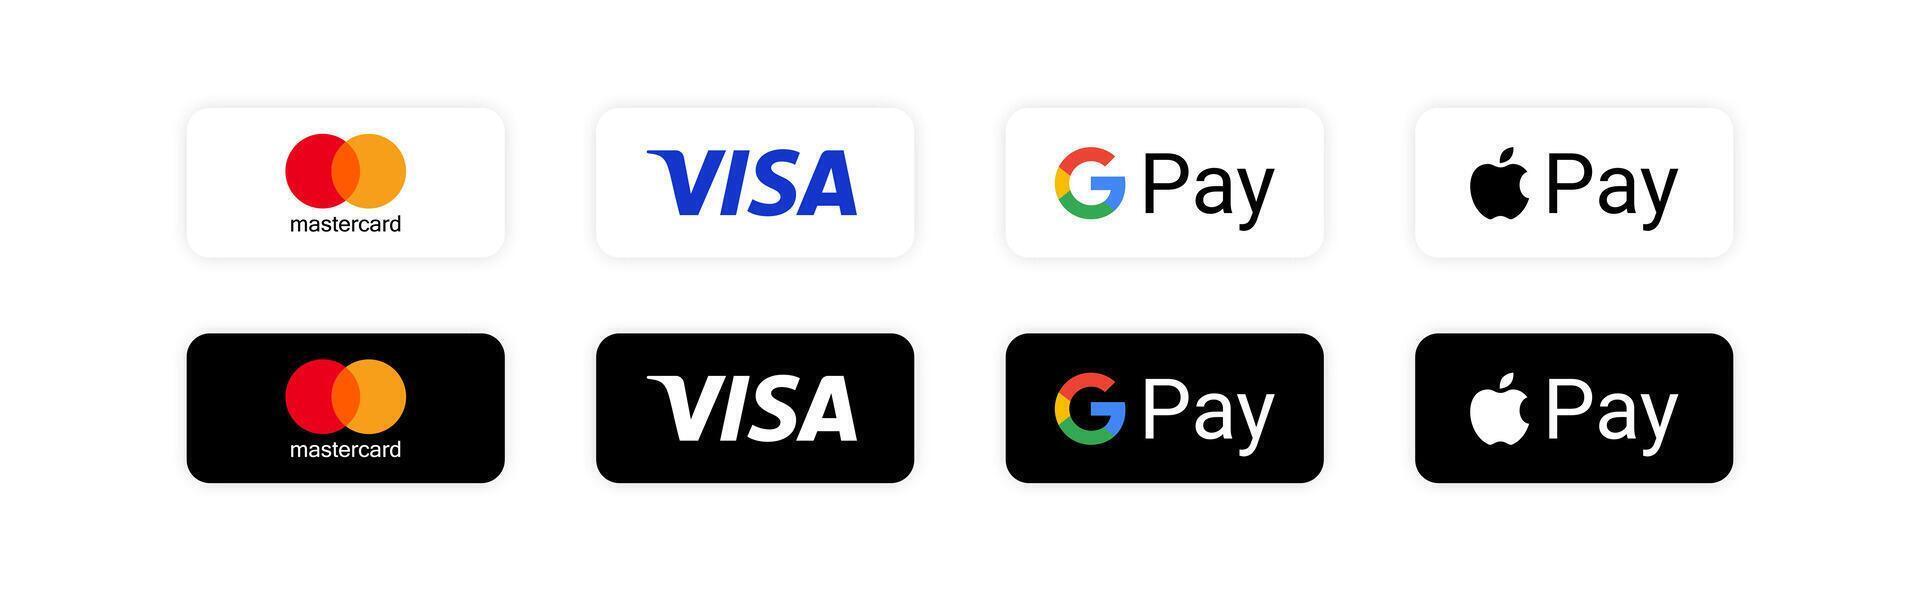 MasterCard, visto, maçã pagar, Google pagar - popular Forma de pagamento sistemas. finança sistema aplicativo. banco cartão. vetor ilustração.